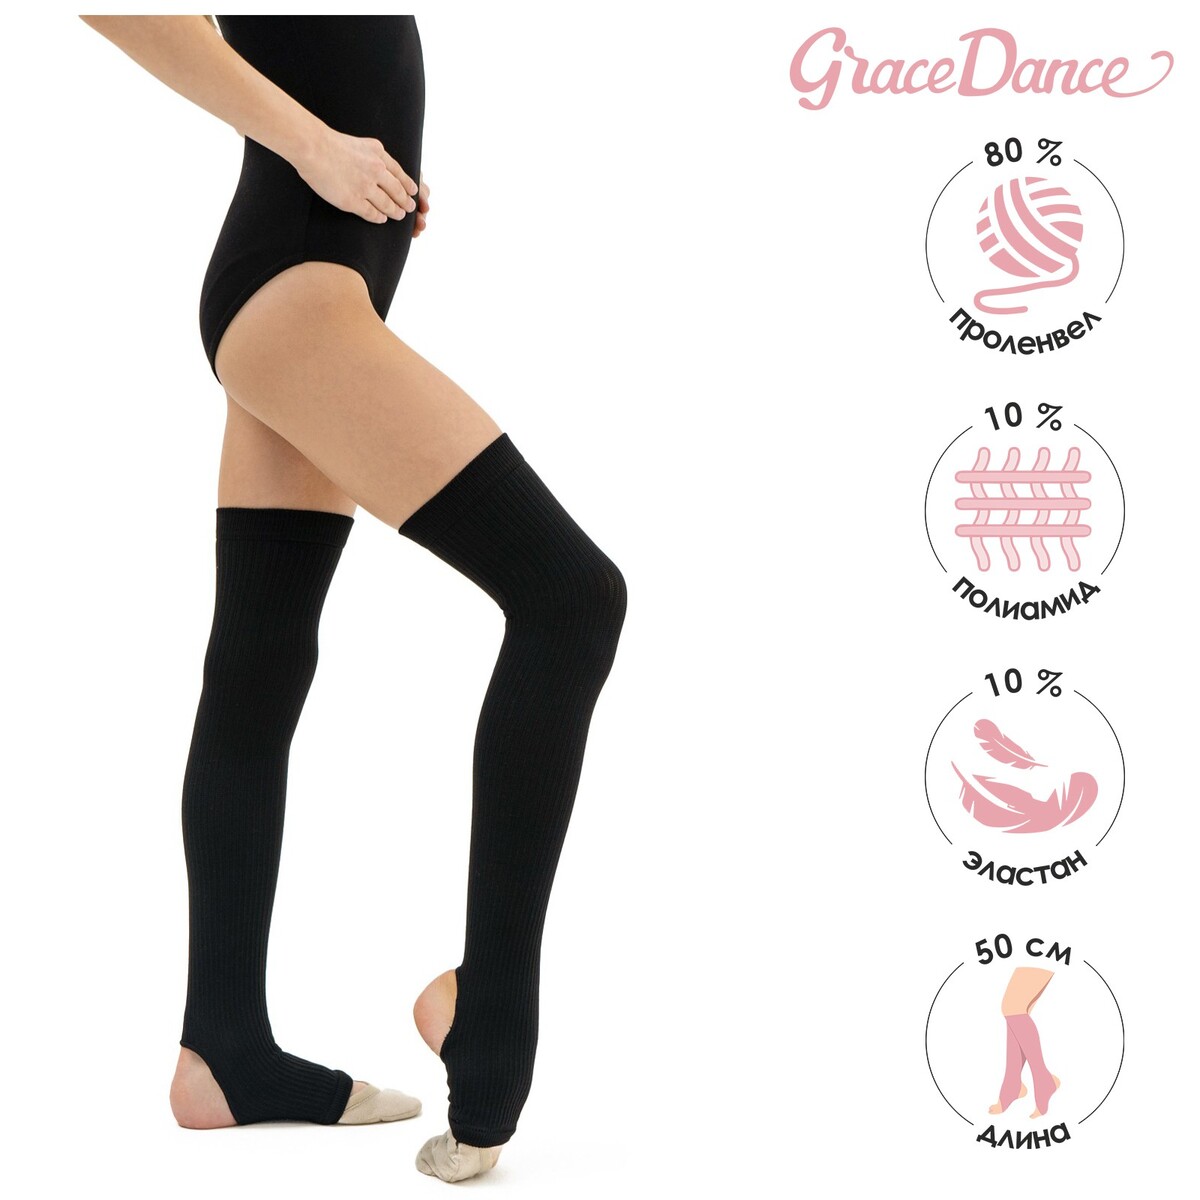 Гетры для танцев grace dance №4, длина 50 см, цвет черный гетры для танцев grace dance 1 полушерстяные длина 60 см серый